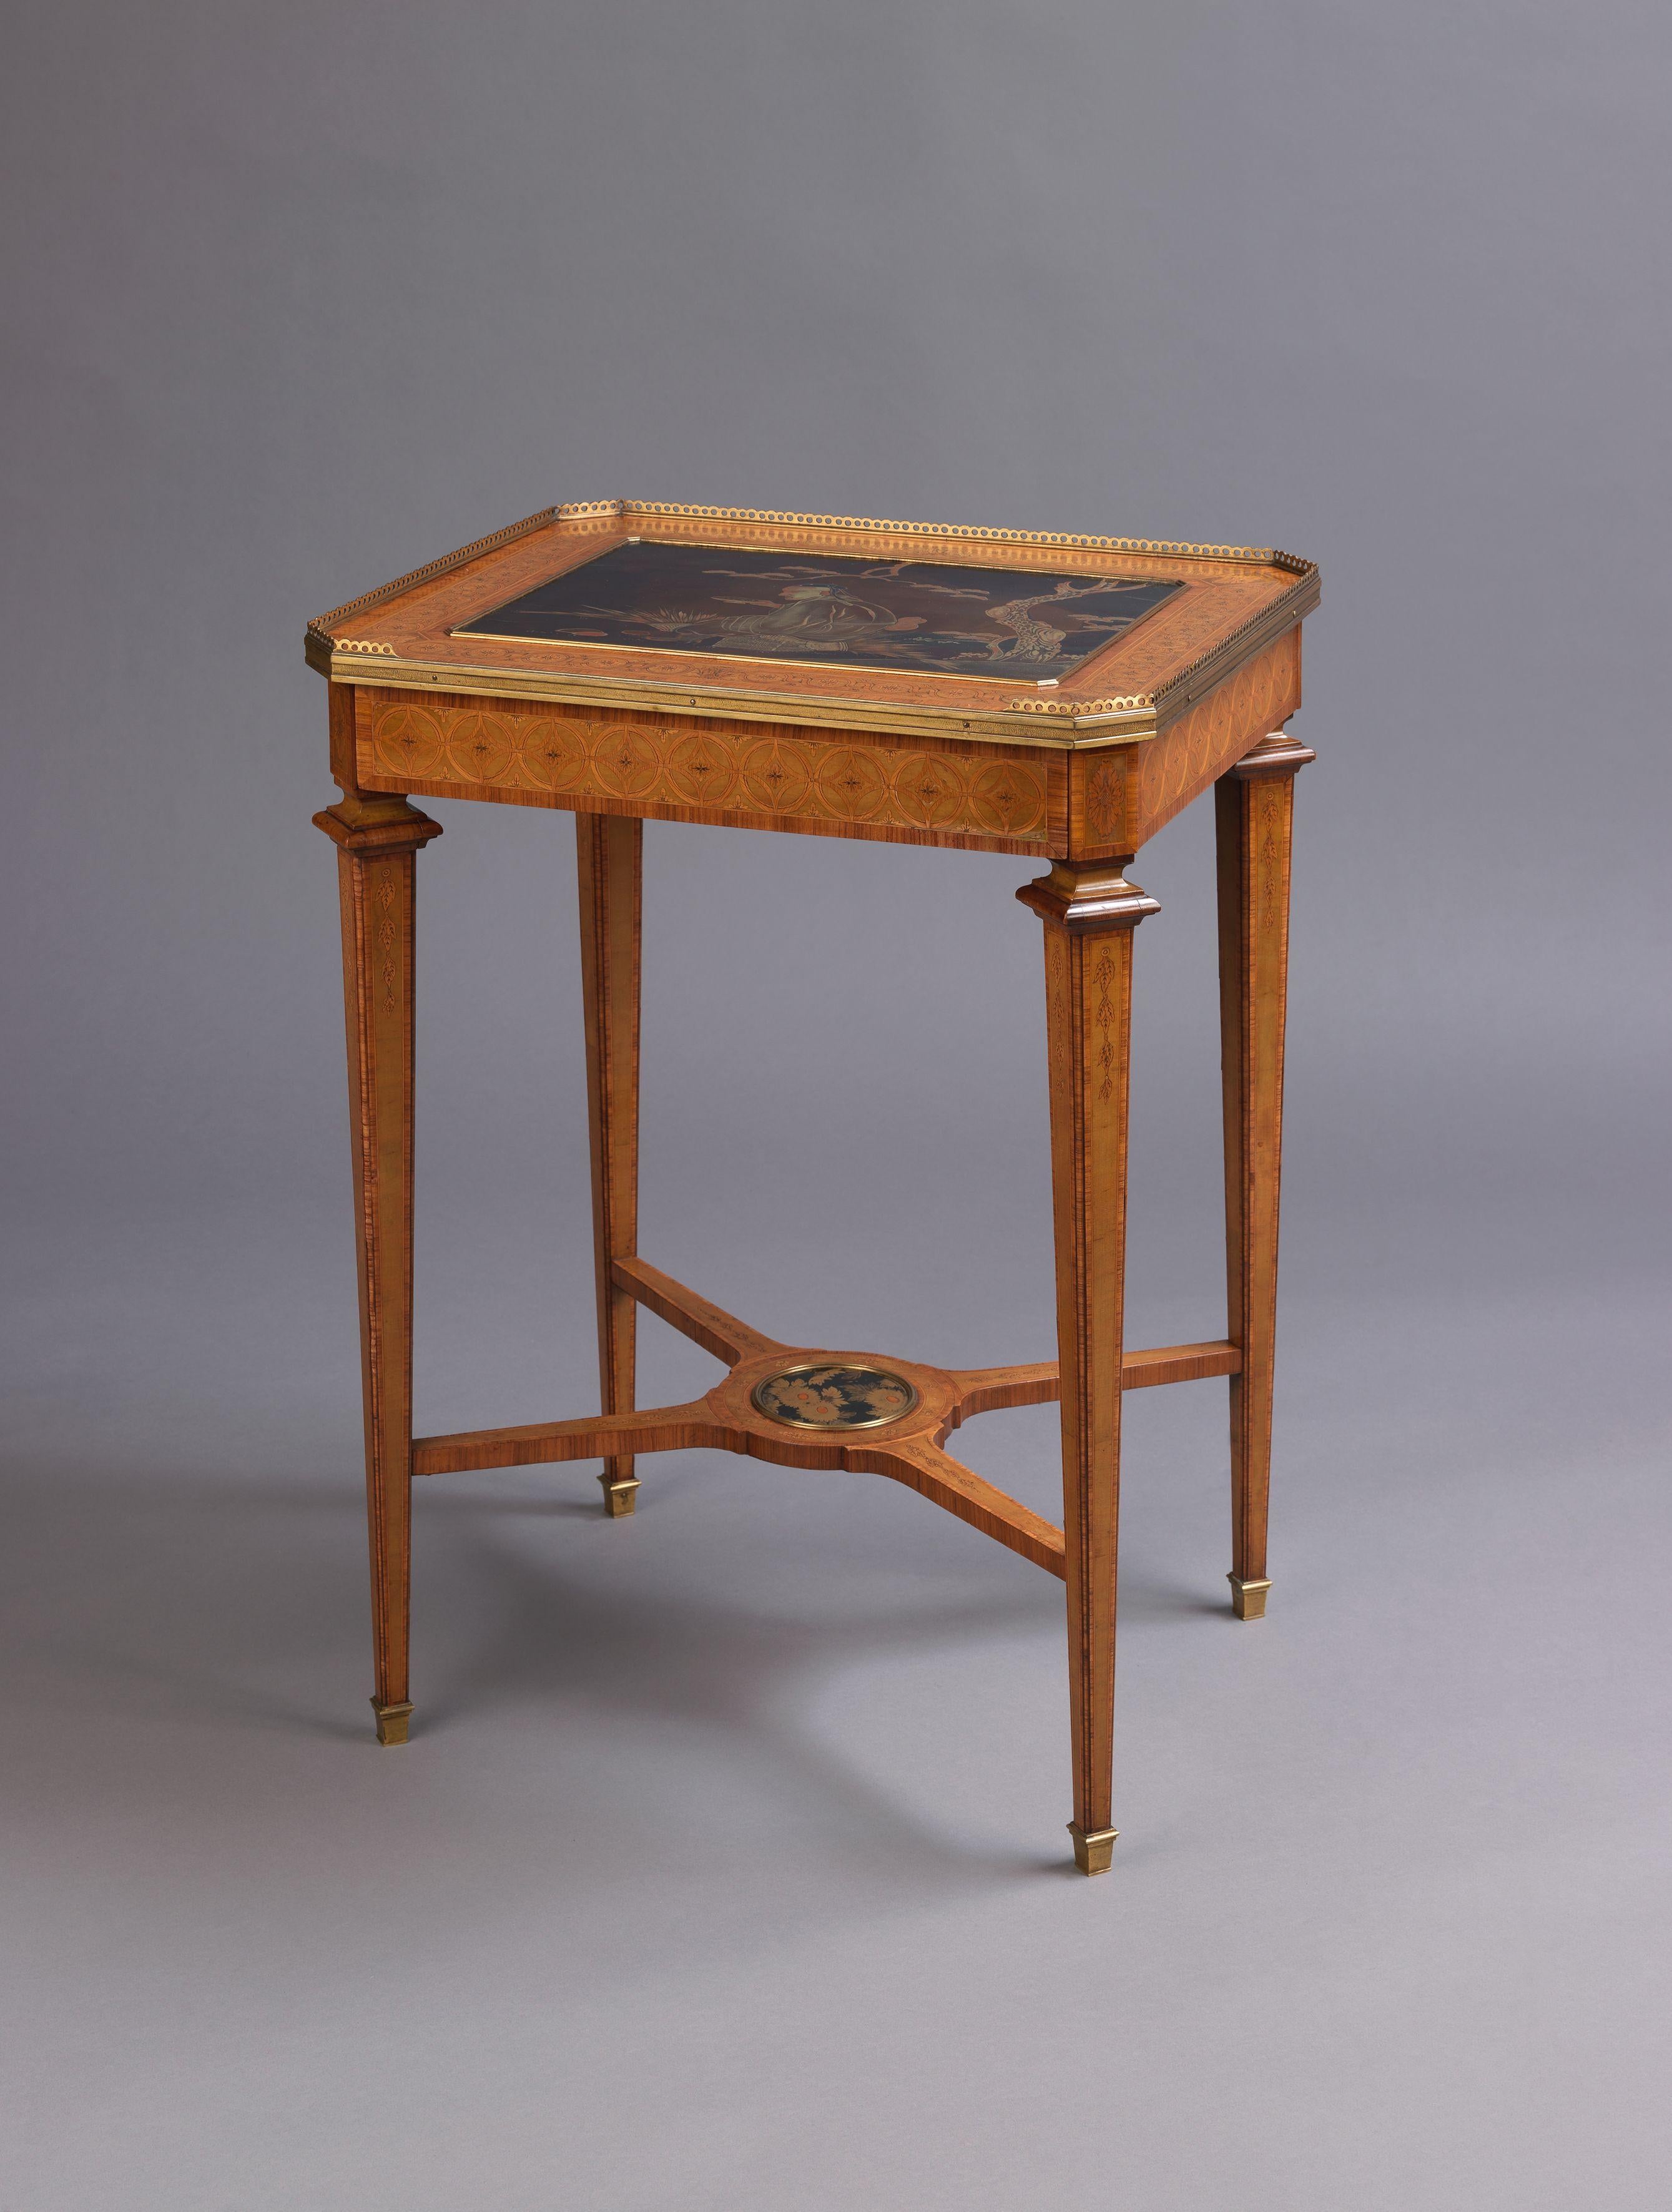 Ein feiner Tisch mit Intarsien und einer Lackplatte, vertrieben von Boin Taburet. 

Frankreich, um 1880. 

Auf der Unterseite gestempelt 